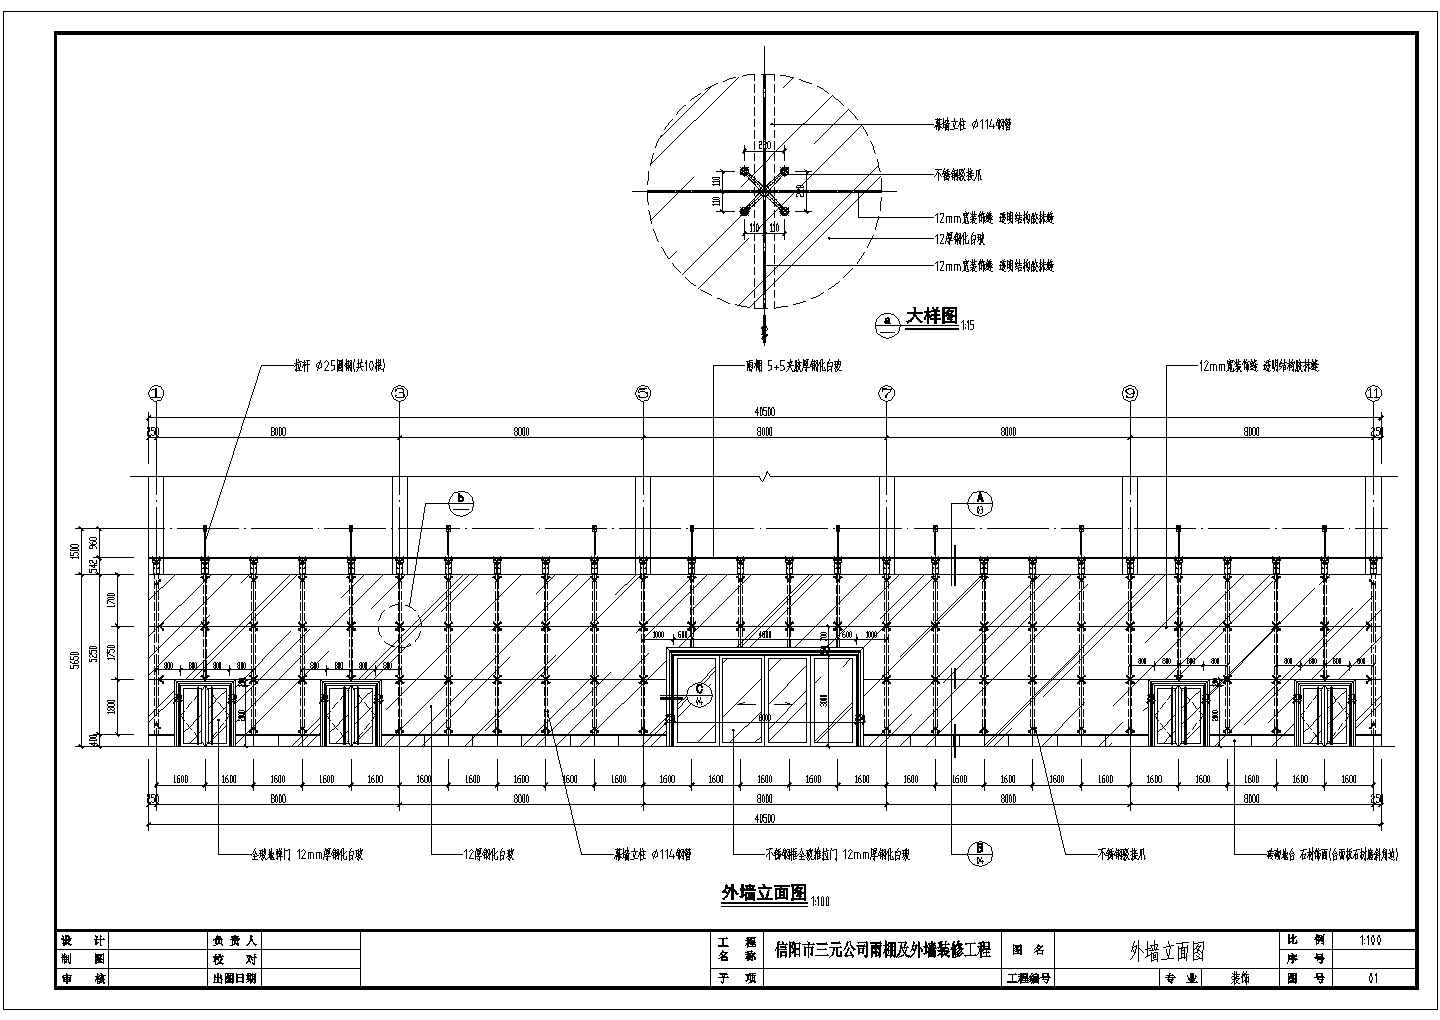 信阳市某公司钢结构雨棚及点式幕墙装修施工图